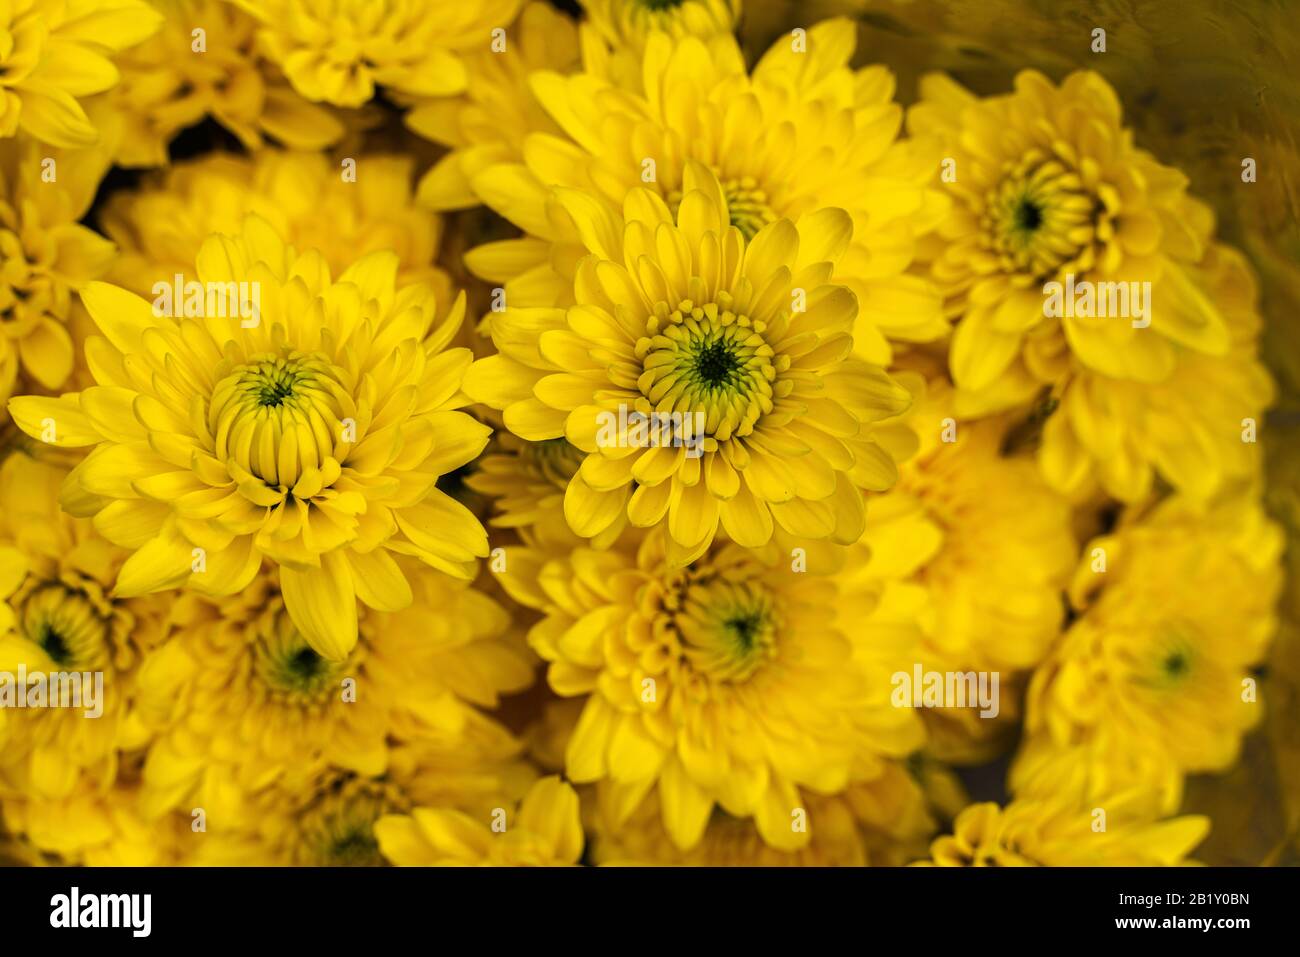 Strauß Chrysanthemen, Chrysantheme indicum, gelb; die Chrysantheme ist eine Art aus der Familie der Asteraceae. Stockfoto